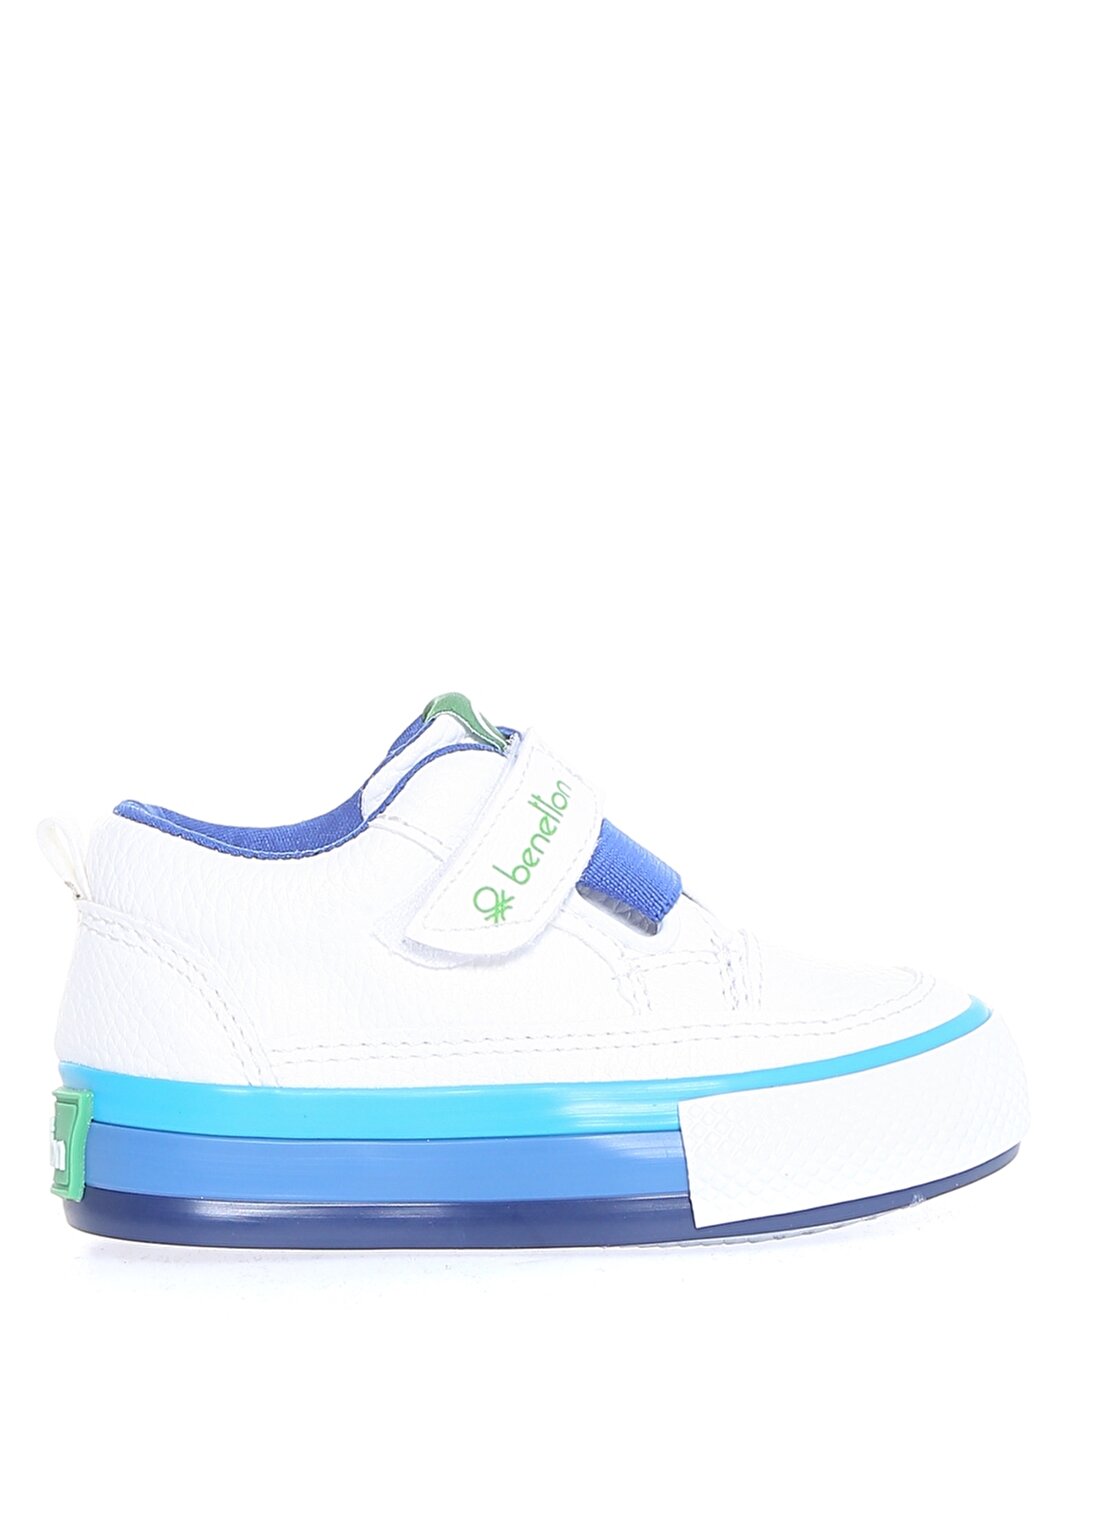 Benetton Beyaz - Mavi Bebek Yürüyüş Ayakkabısı BN-30445 688